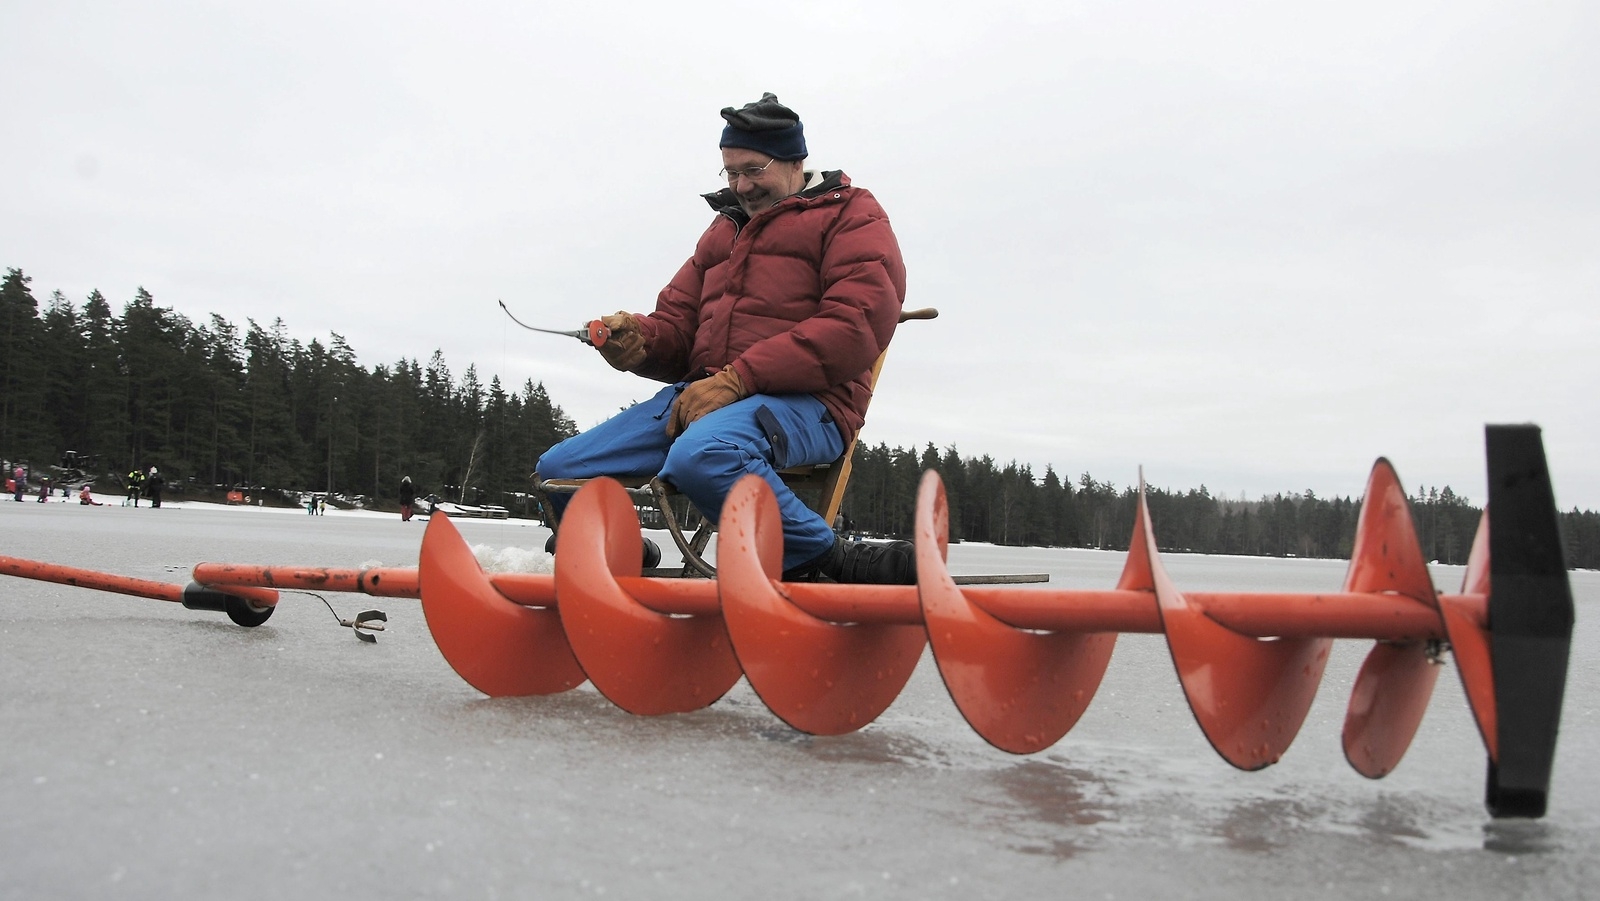 Jaan Tönissoo från Helsingborg har fritidshus vid sjön. Den här dagen plockade han fram sparken och gled ut på isen för att vara med i isfisketävlingen.